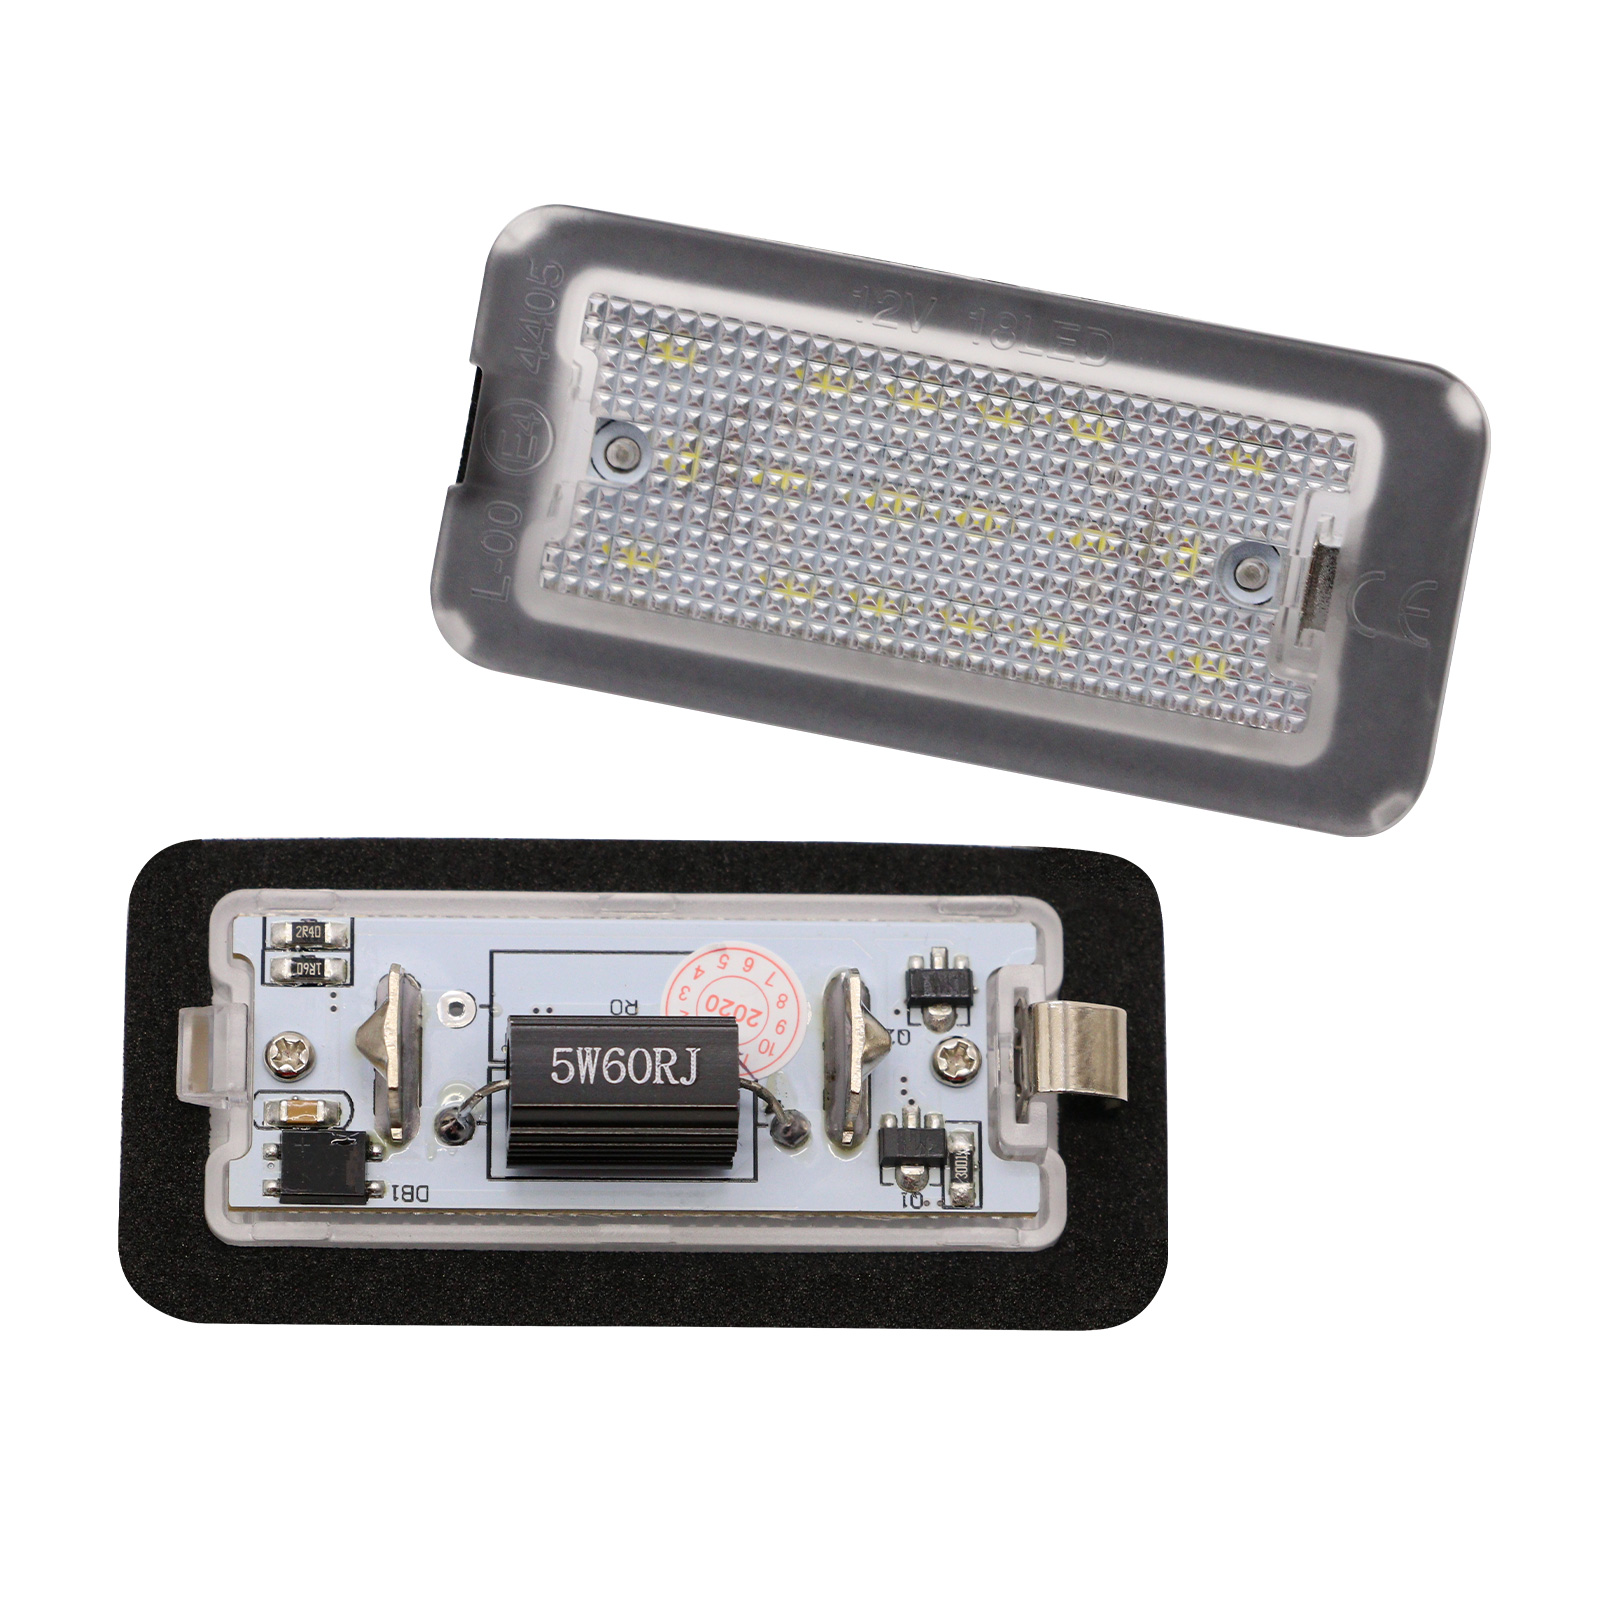 2 modules LED pour l'éclairage plaque d'immatriculation Fiat 500